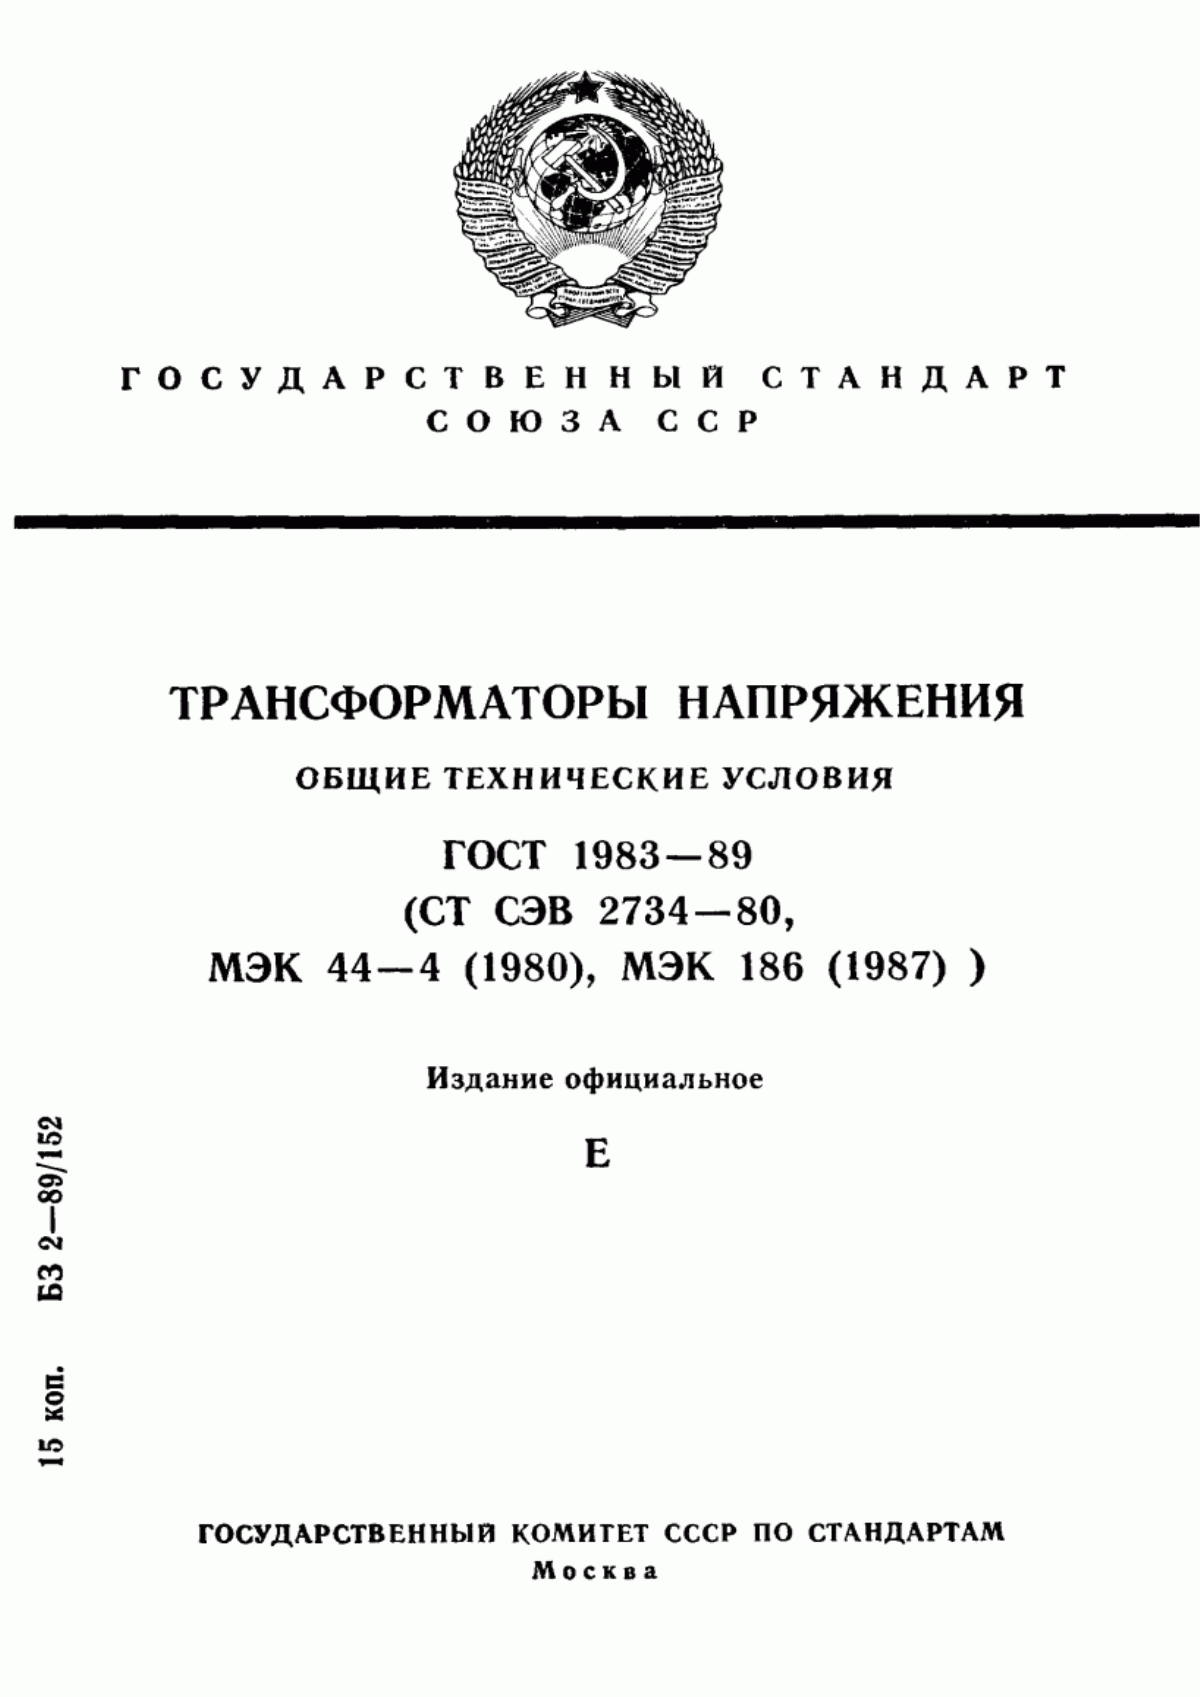 ГОСТ 1983-89 Трансформаторы напряжения. Общие технические условия